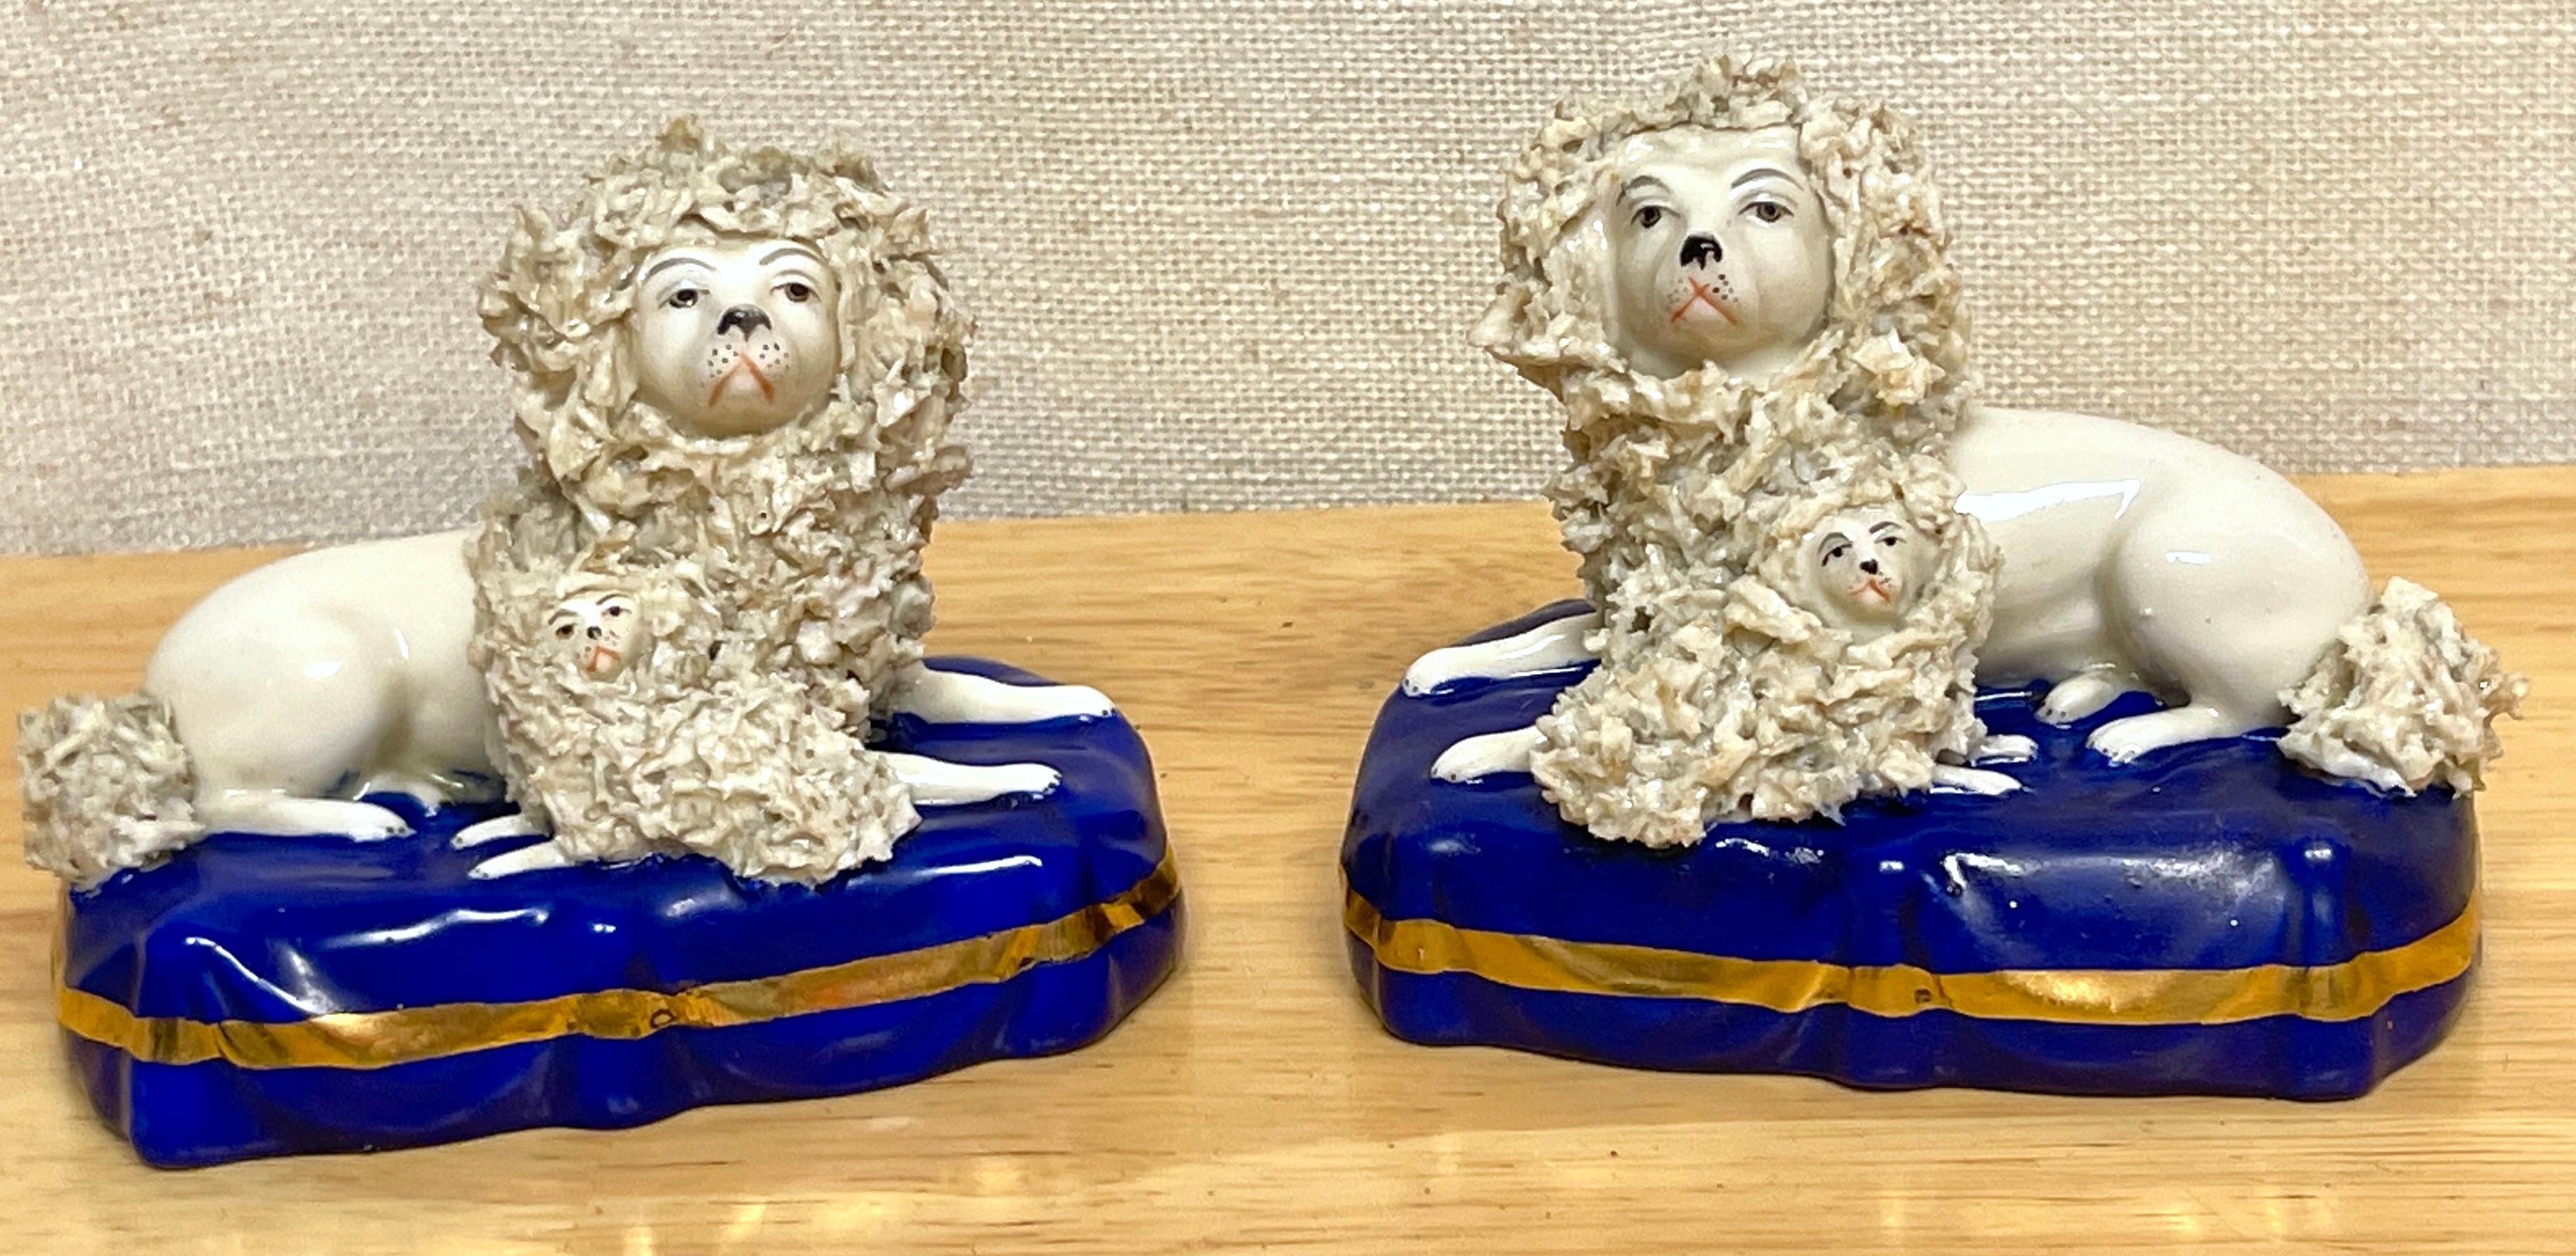 Paar Chelsea-Porzellanfiguren aus dem 19. Jahrhundert mit sitzenden Pudeln und Welpen 
England, ca. 1850
Ein seltener Fund, ein echtes Paar Chelsea Porcelain (Attributed) Pudel und Welpen.
Beide Figuren gut bemalt, mit aufgelegtem